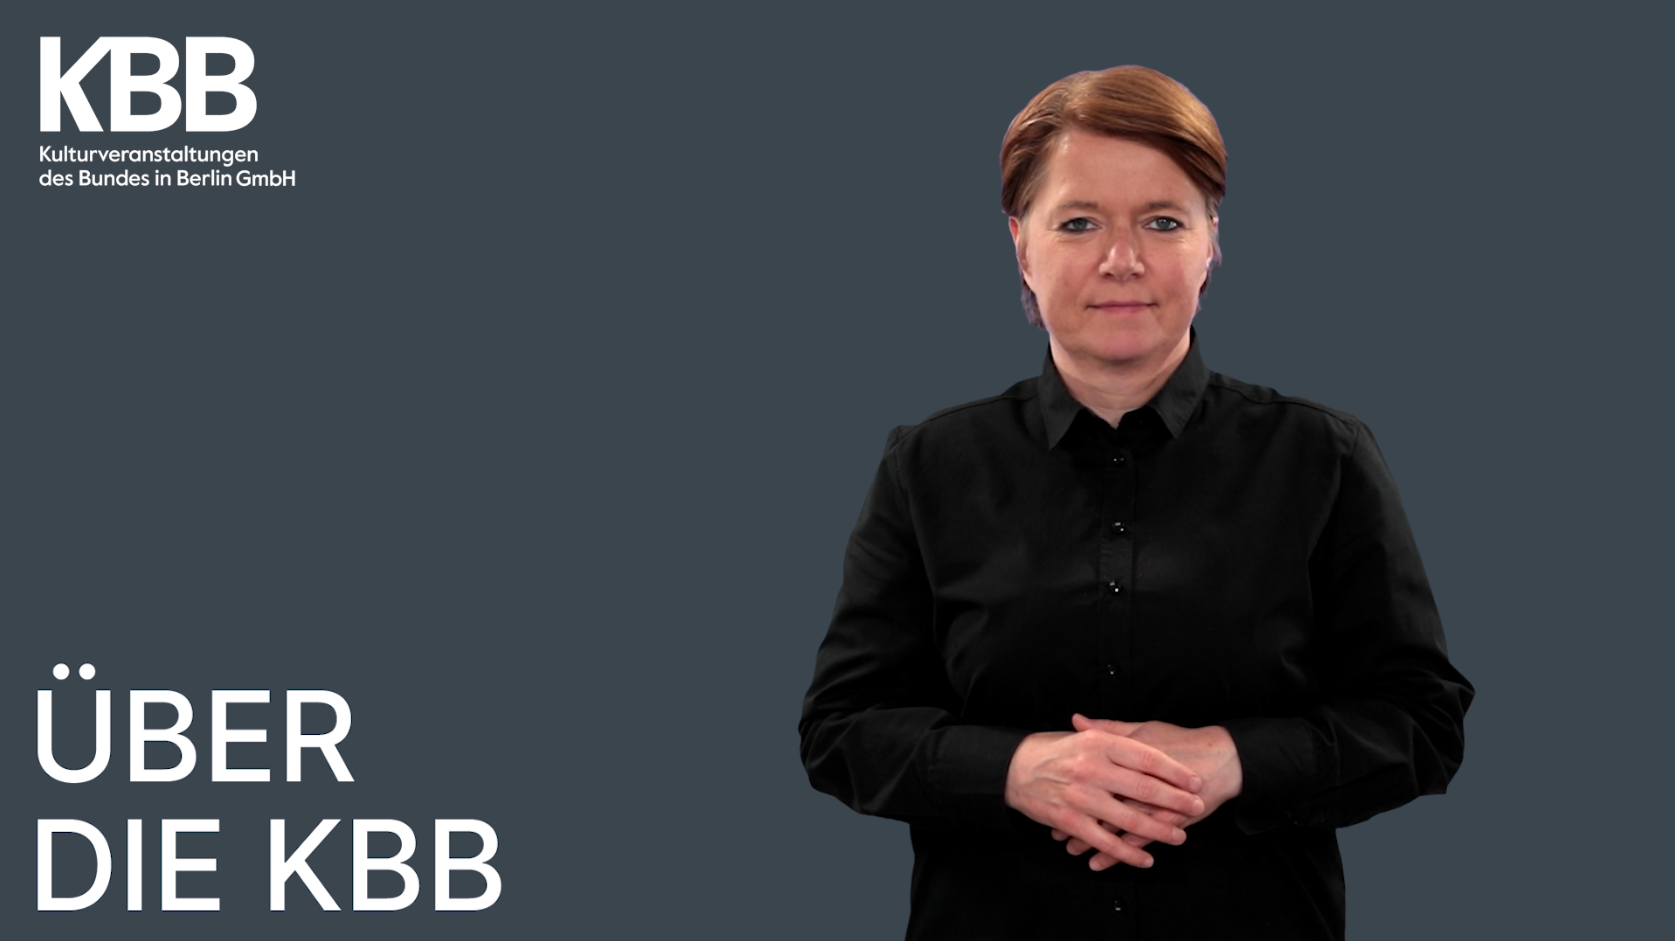 Die Übersetzerin Katja Fischer vor grauem Hintergrund. Links unten eingeblendet sind die Worte "Über die KBB".